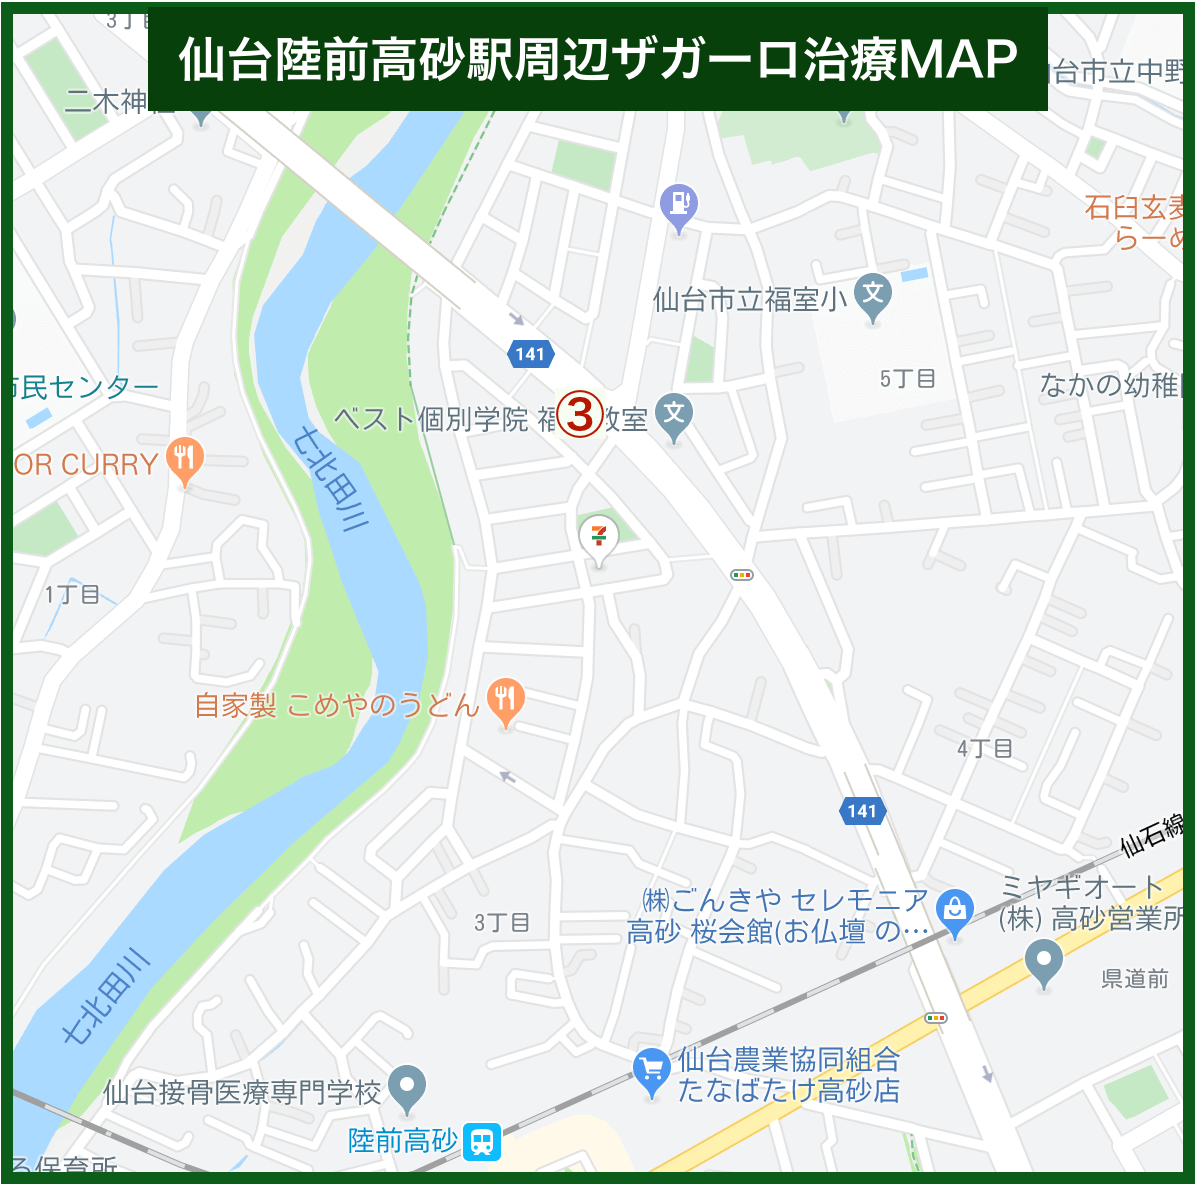 仙台陸前高砂駅周辺ザガーロ治療MAP